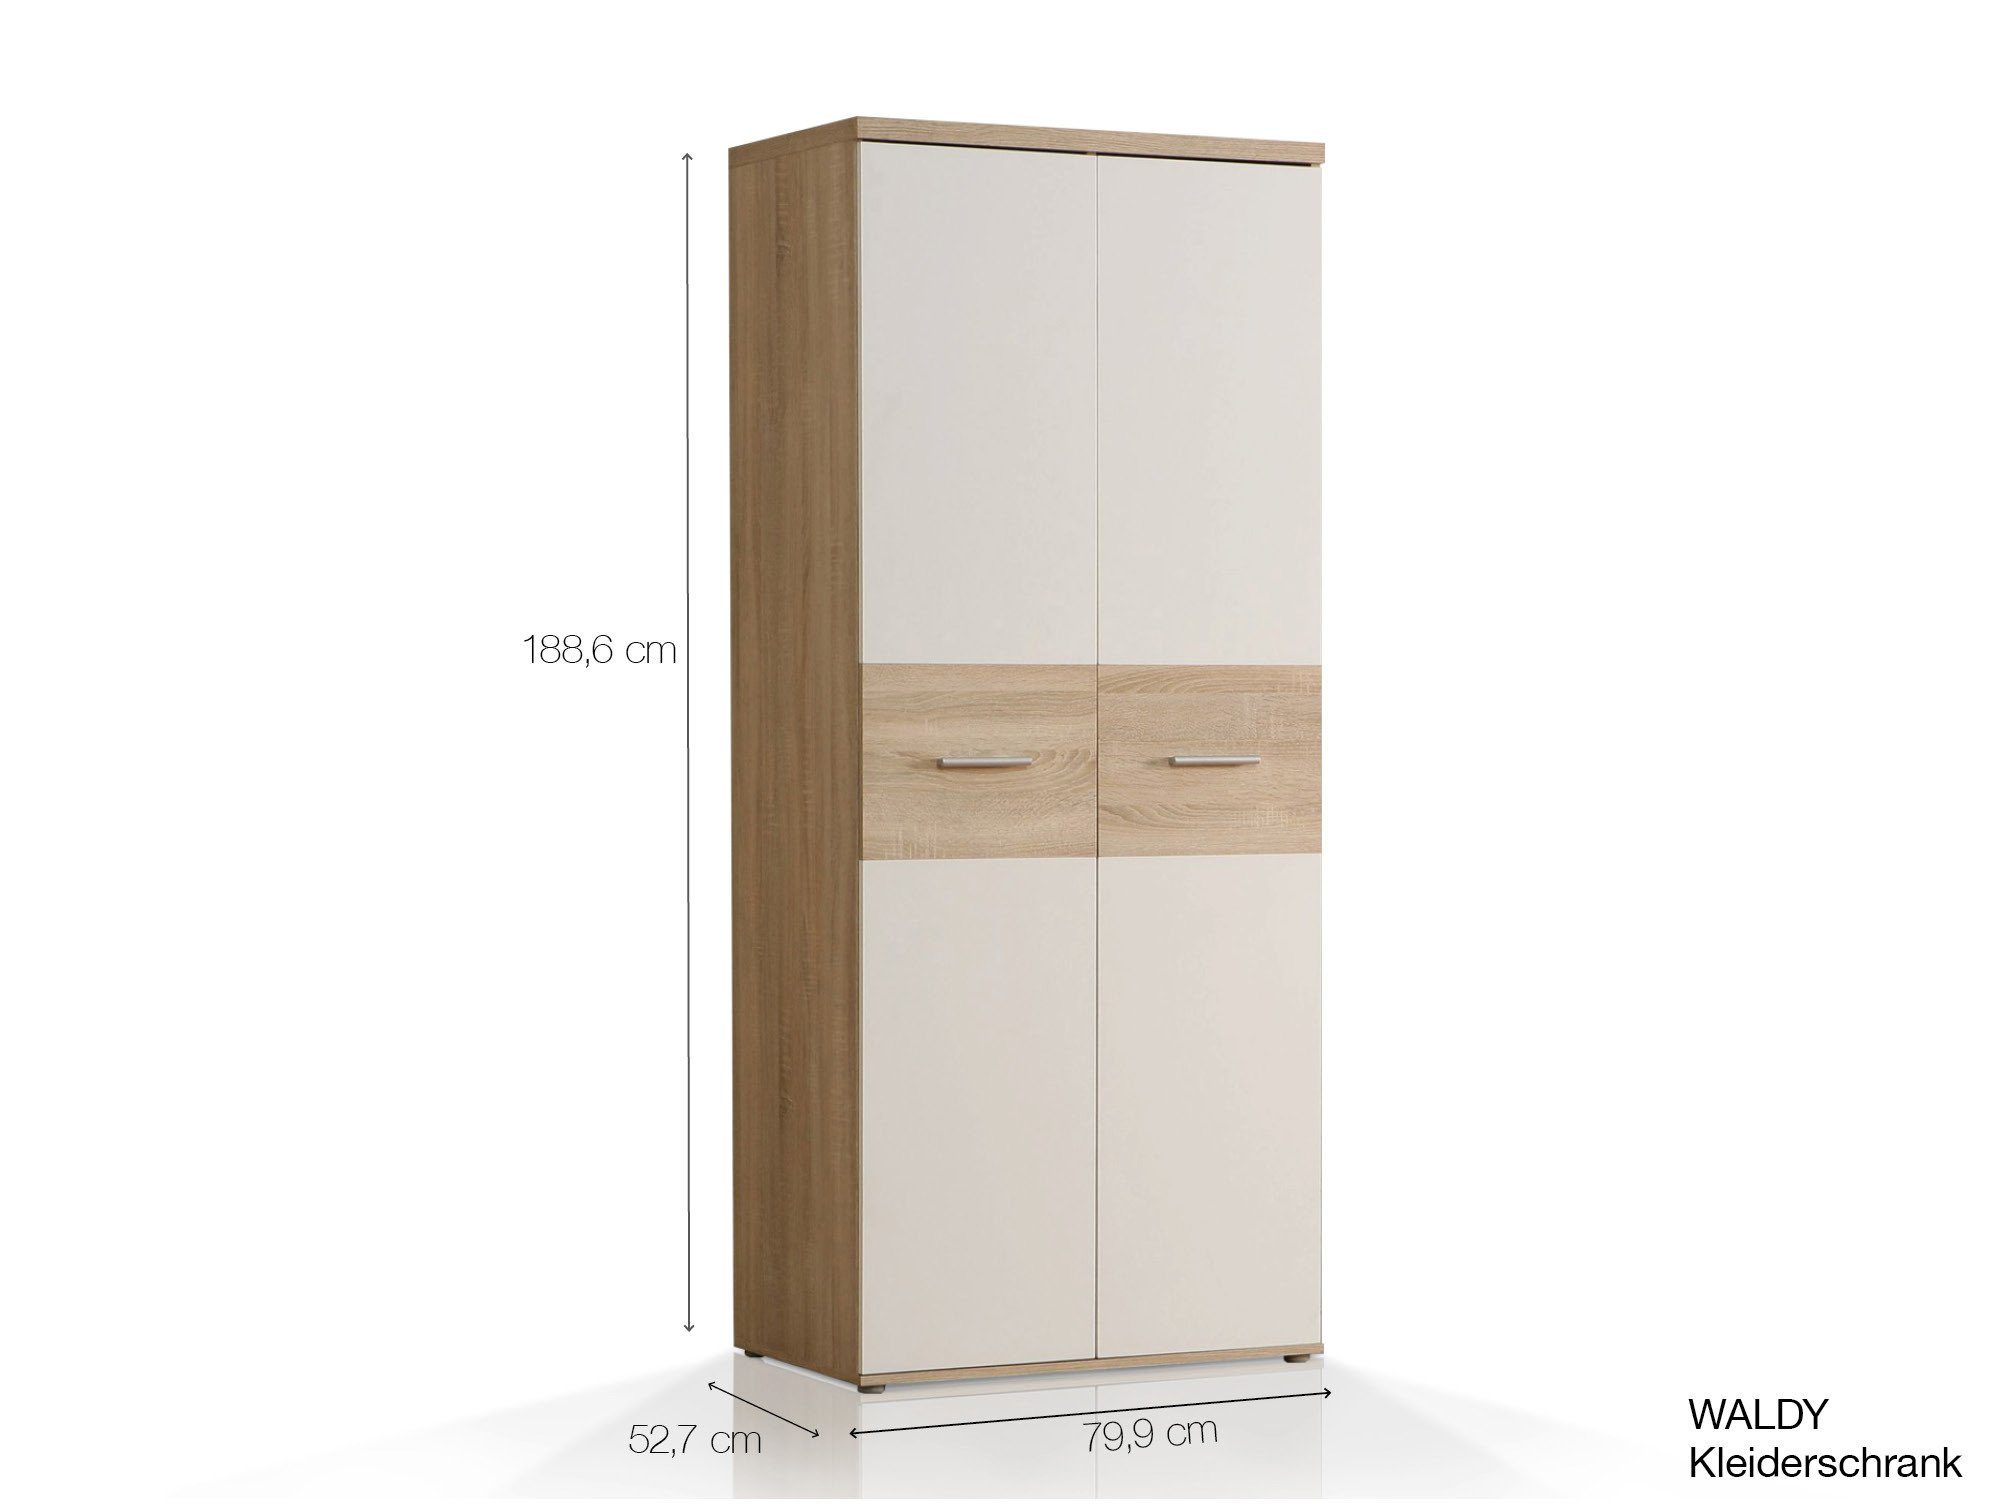 Moebel-Eins Kleiderschrank WALDY Kleiderschrank Dekorspanplatte, Türen, 2 sonomafarbig/weiss Eiche Material mit